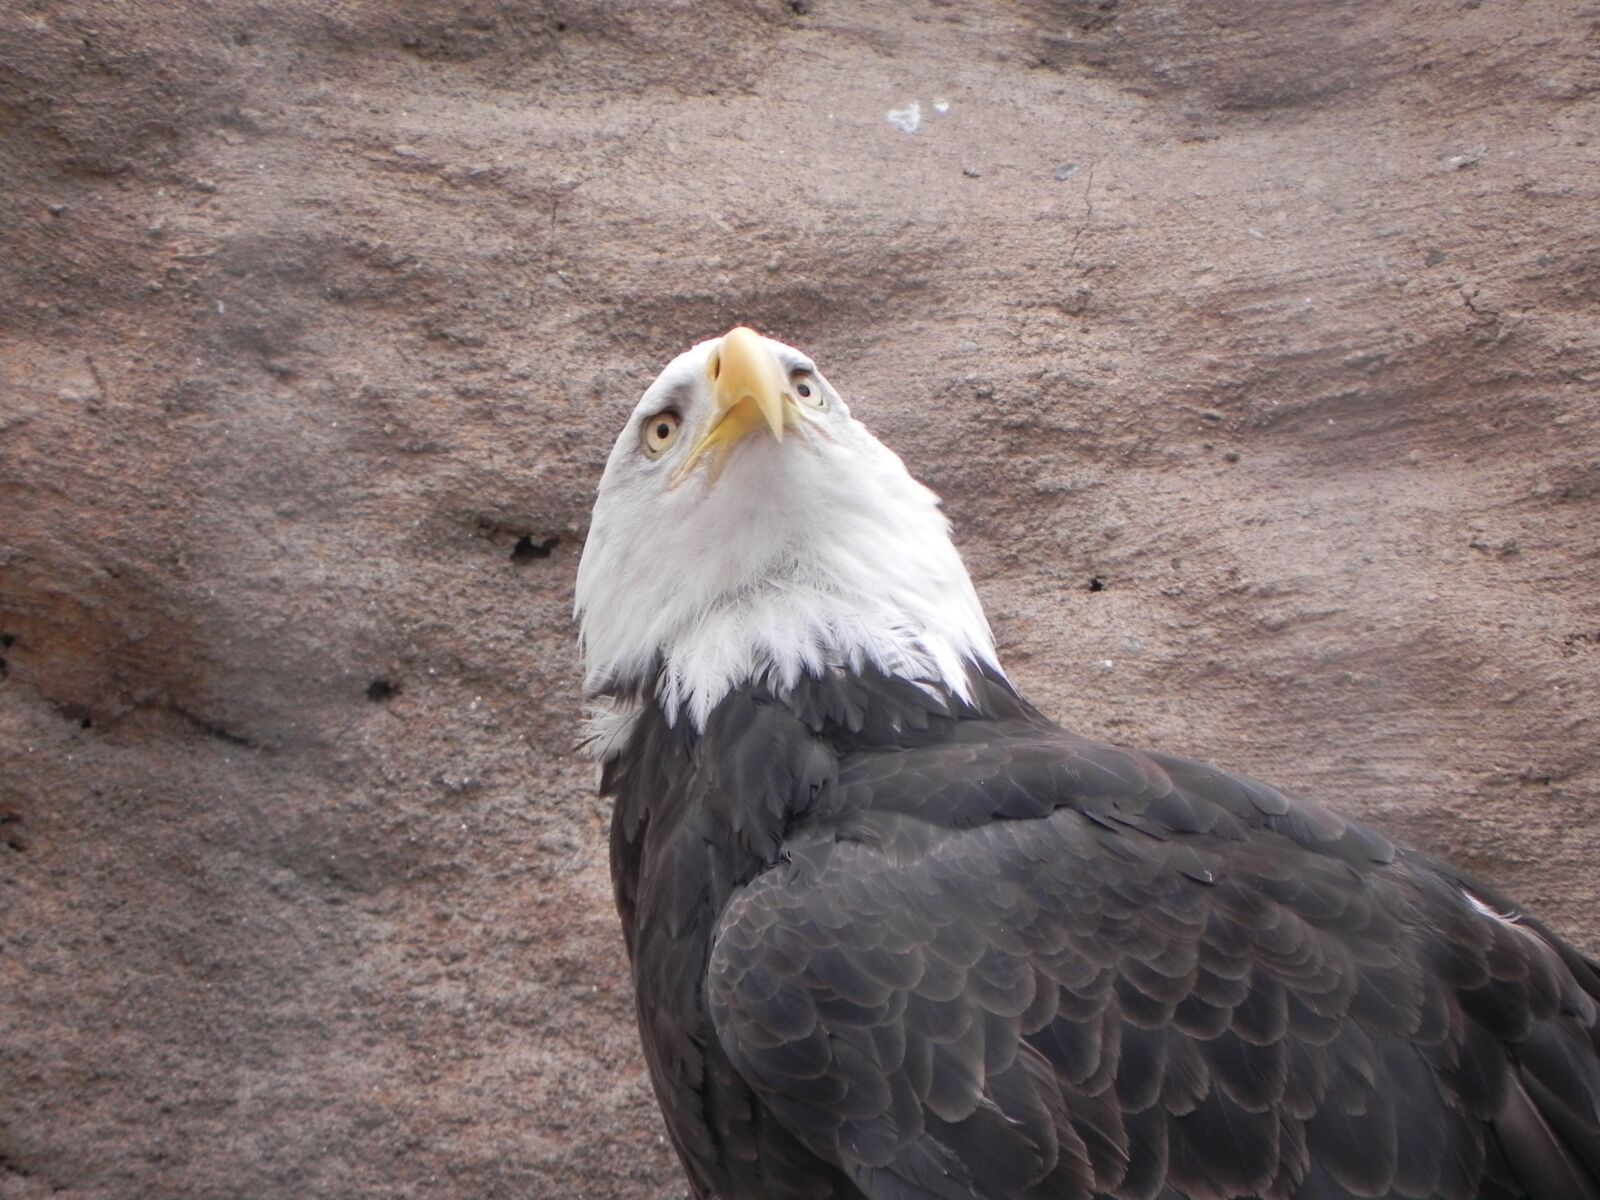 Nikon Coolpix P100 sample photo. Bald eagle, bird, albuquerque photography